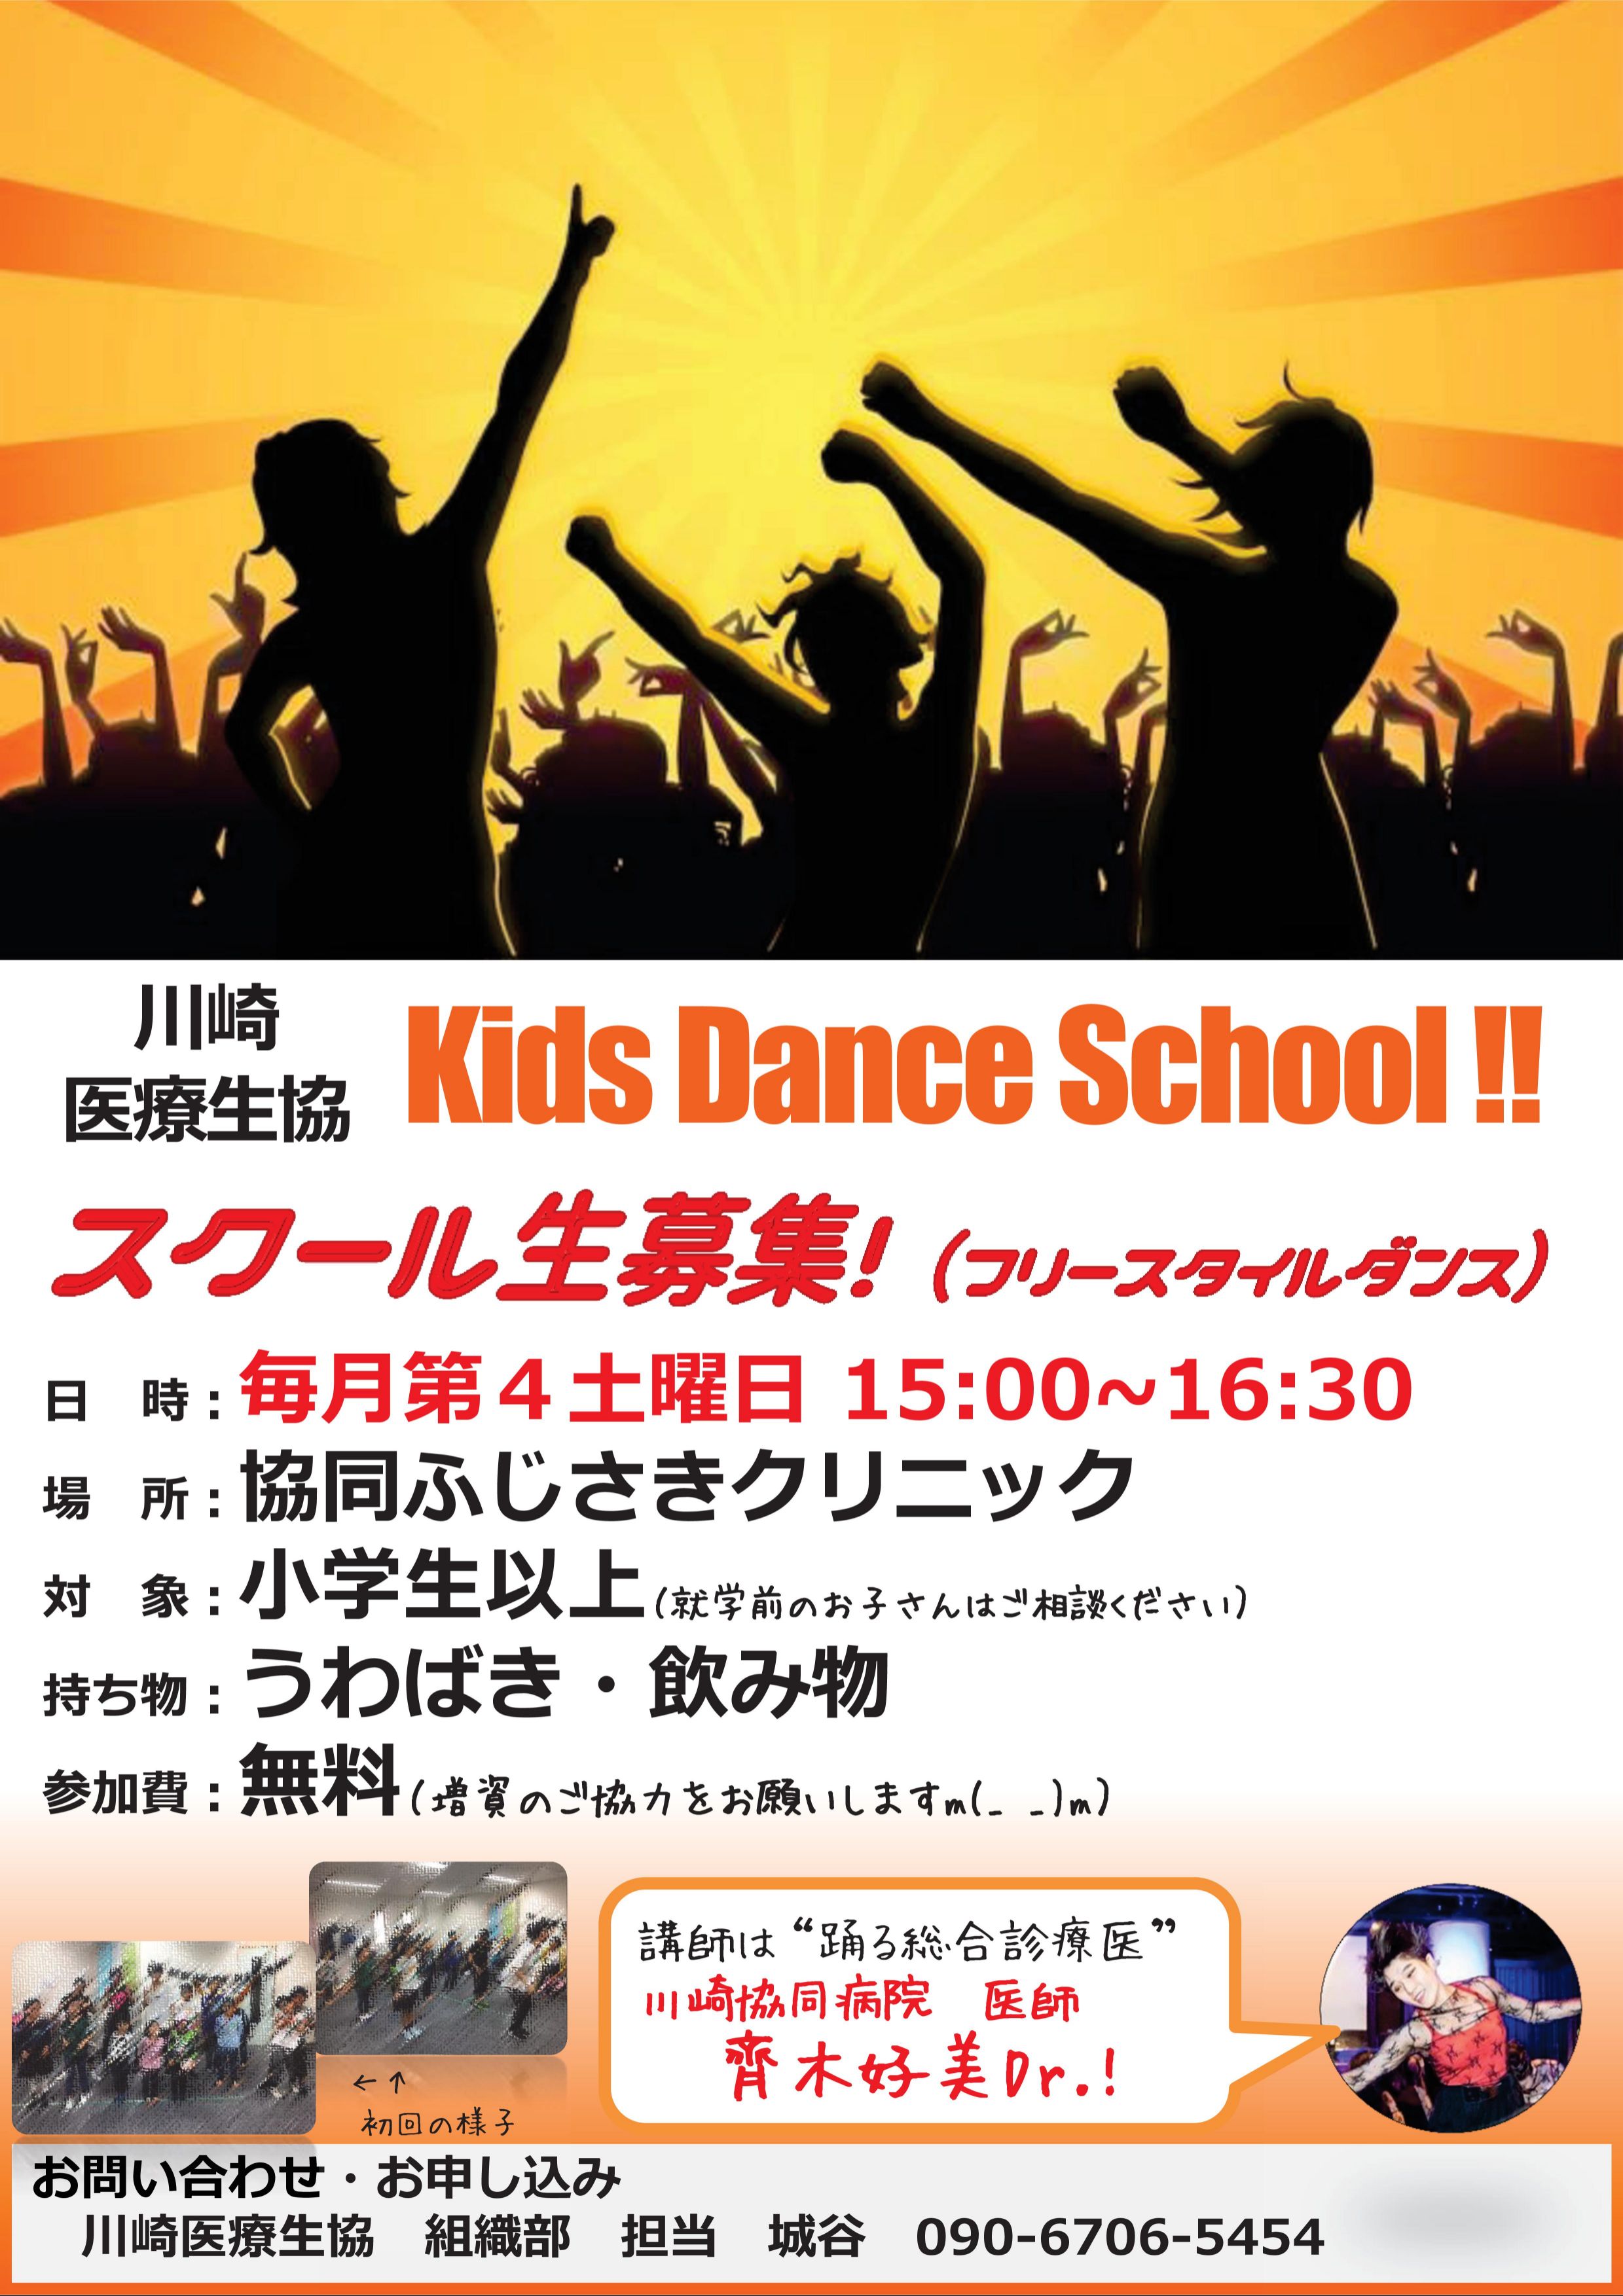 Kids Dance School